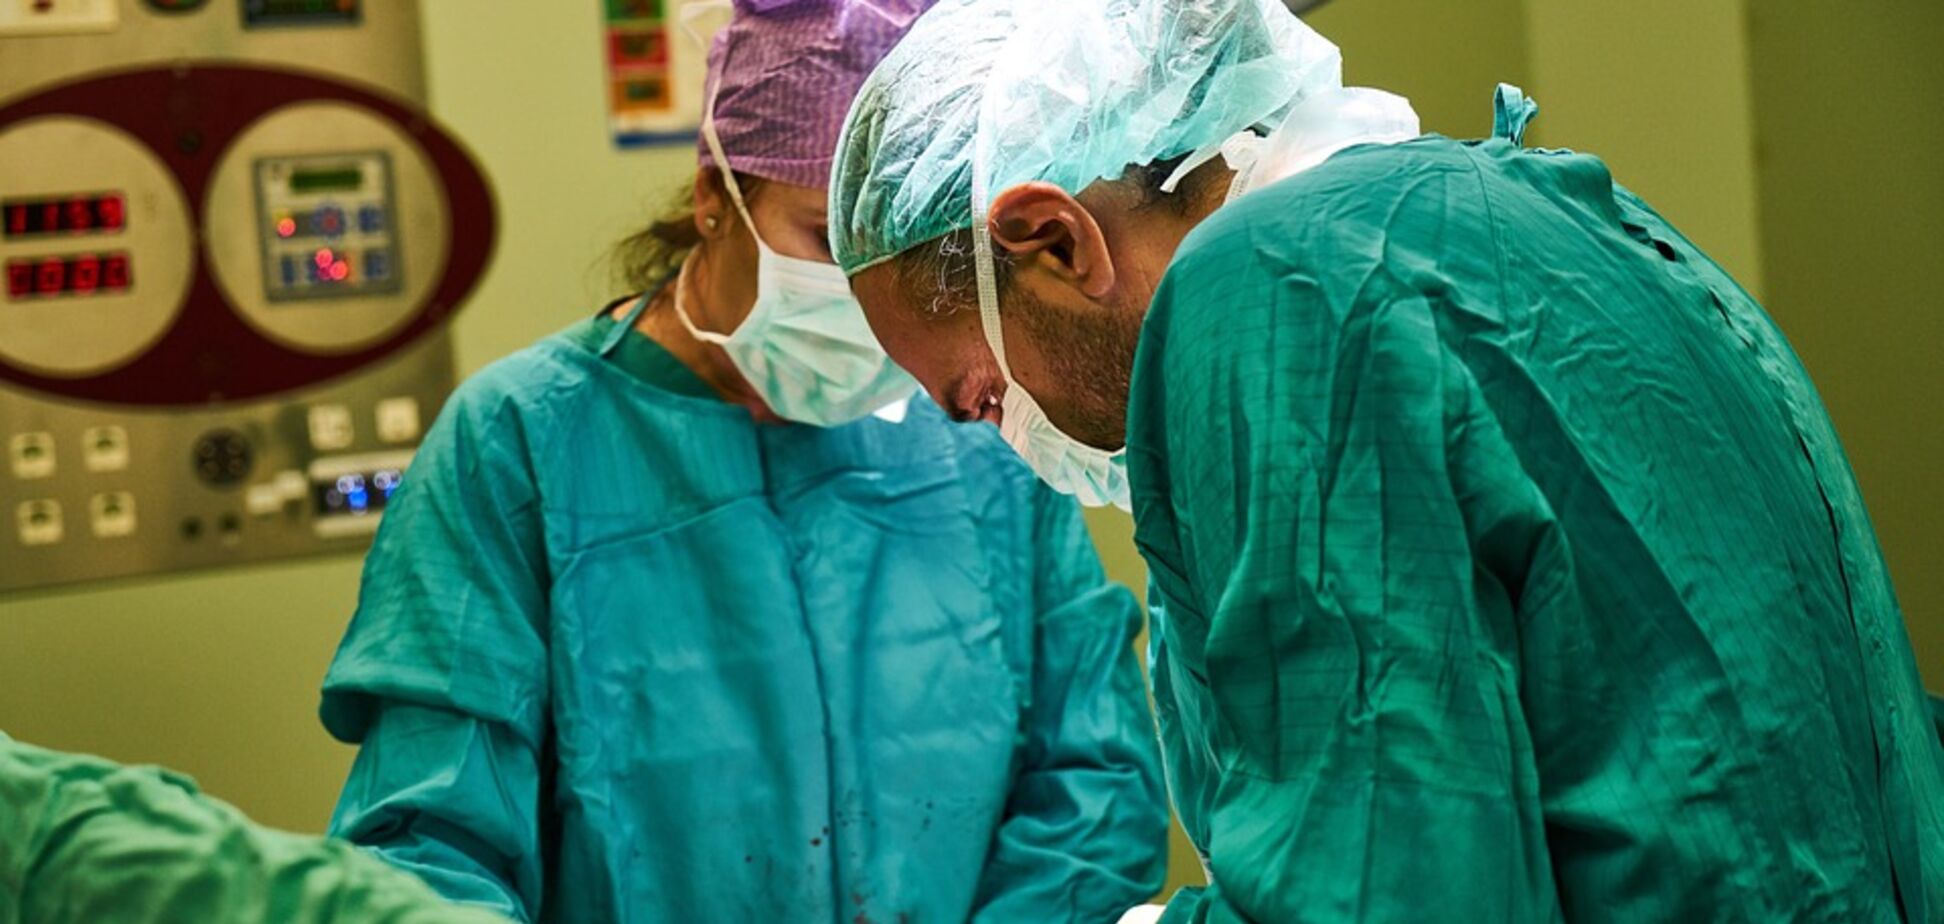 Ошибочка вышла: врач прооперировал пациенту ногу вместо головы